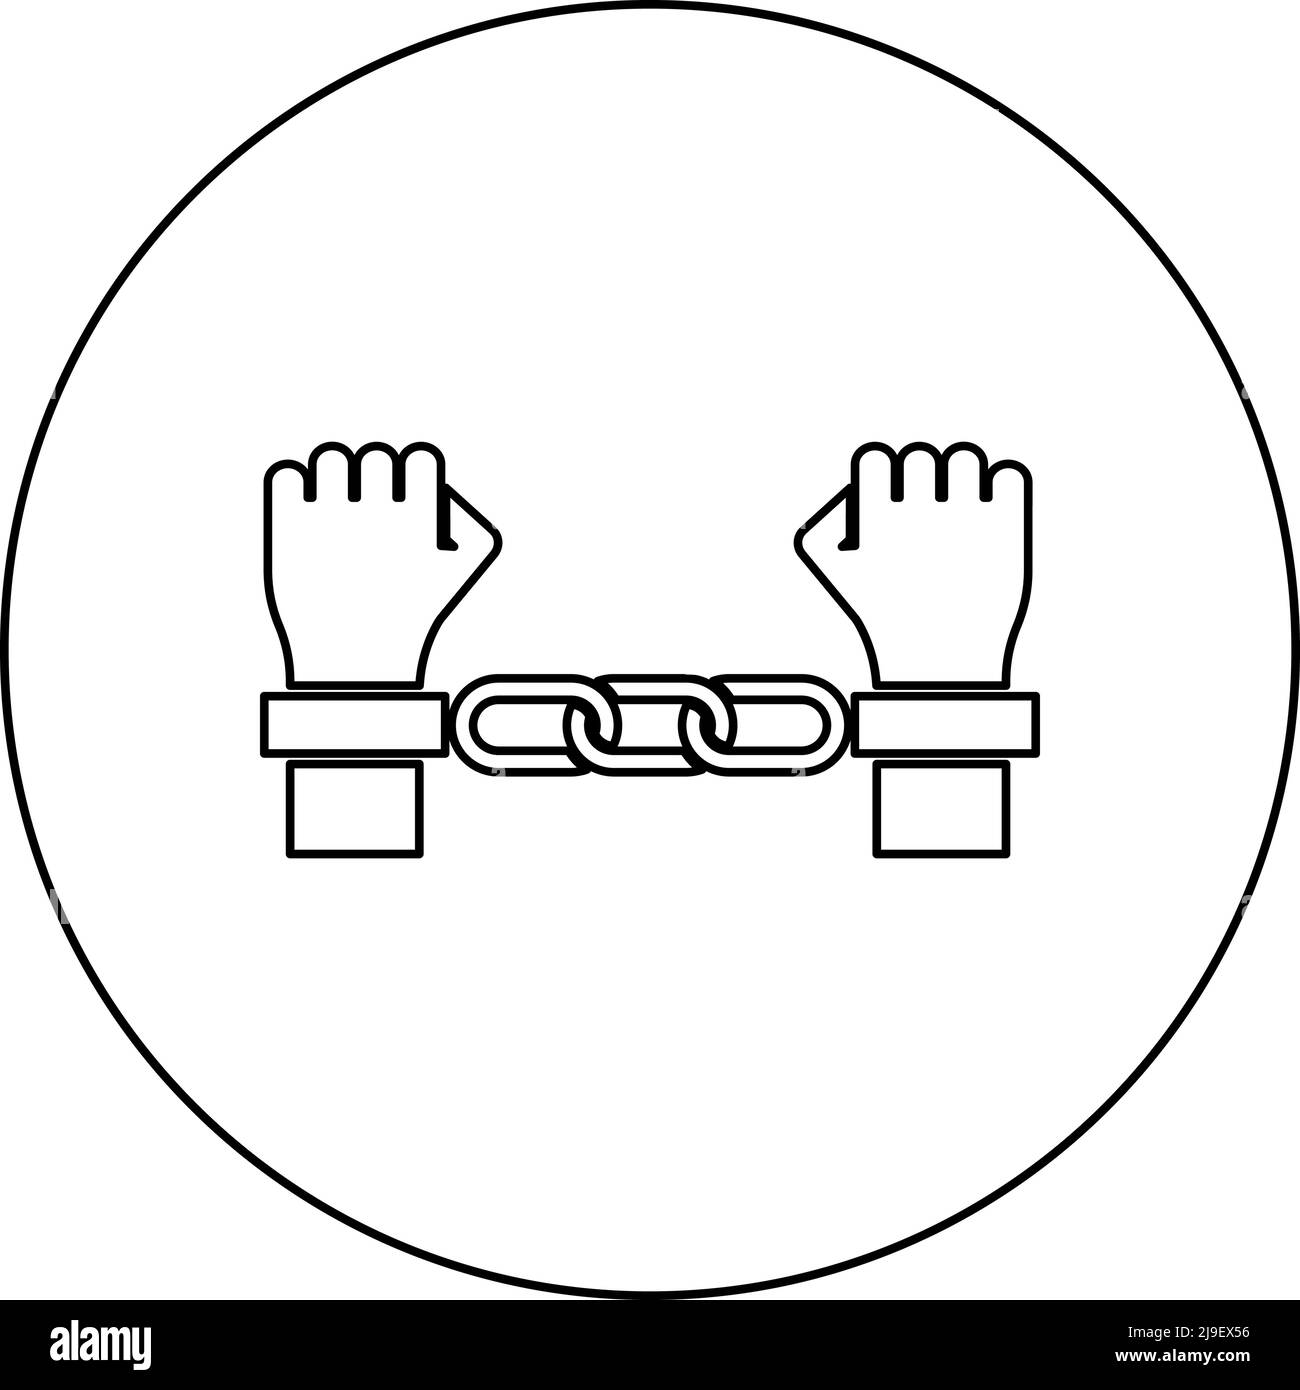 Hände in Handschellen Kriminalkonzept verhaftet Strafe Bondage Sträfling Symbol im Kreis rund schwarz Farbe Vektor Illustration Bild Kontur Kontur Stock Vektor